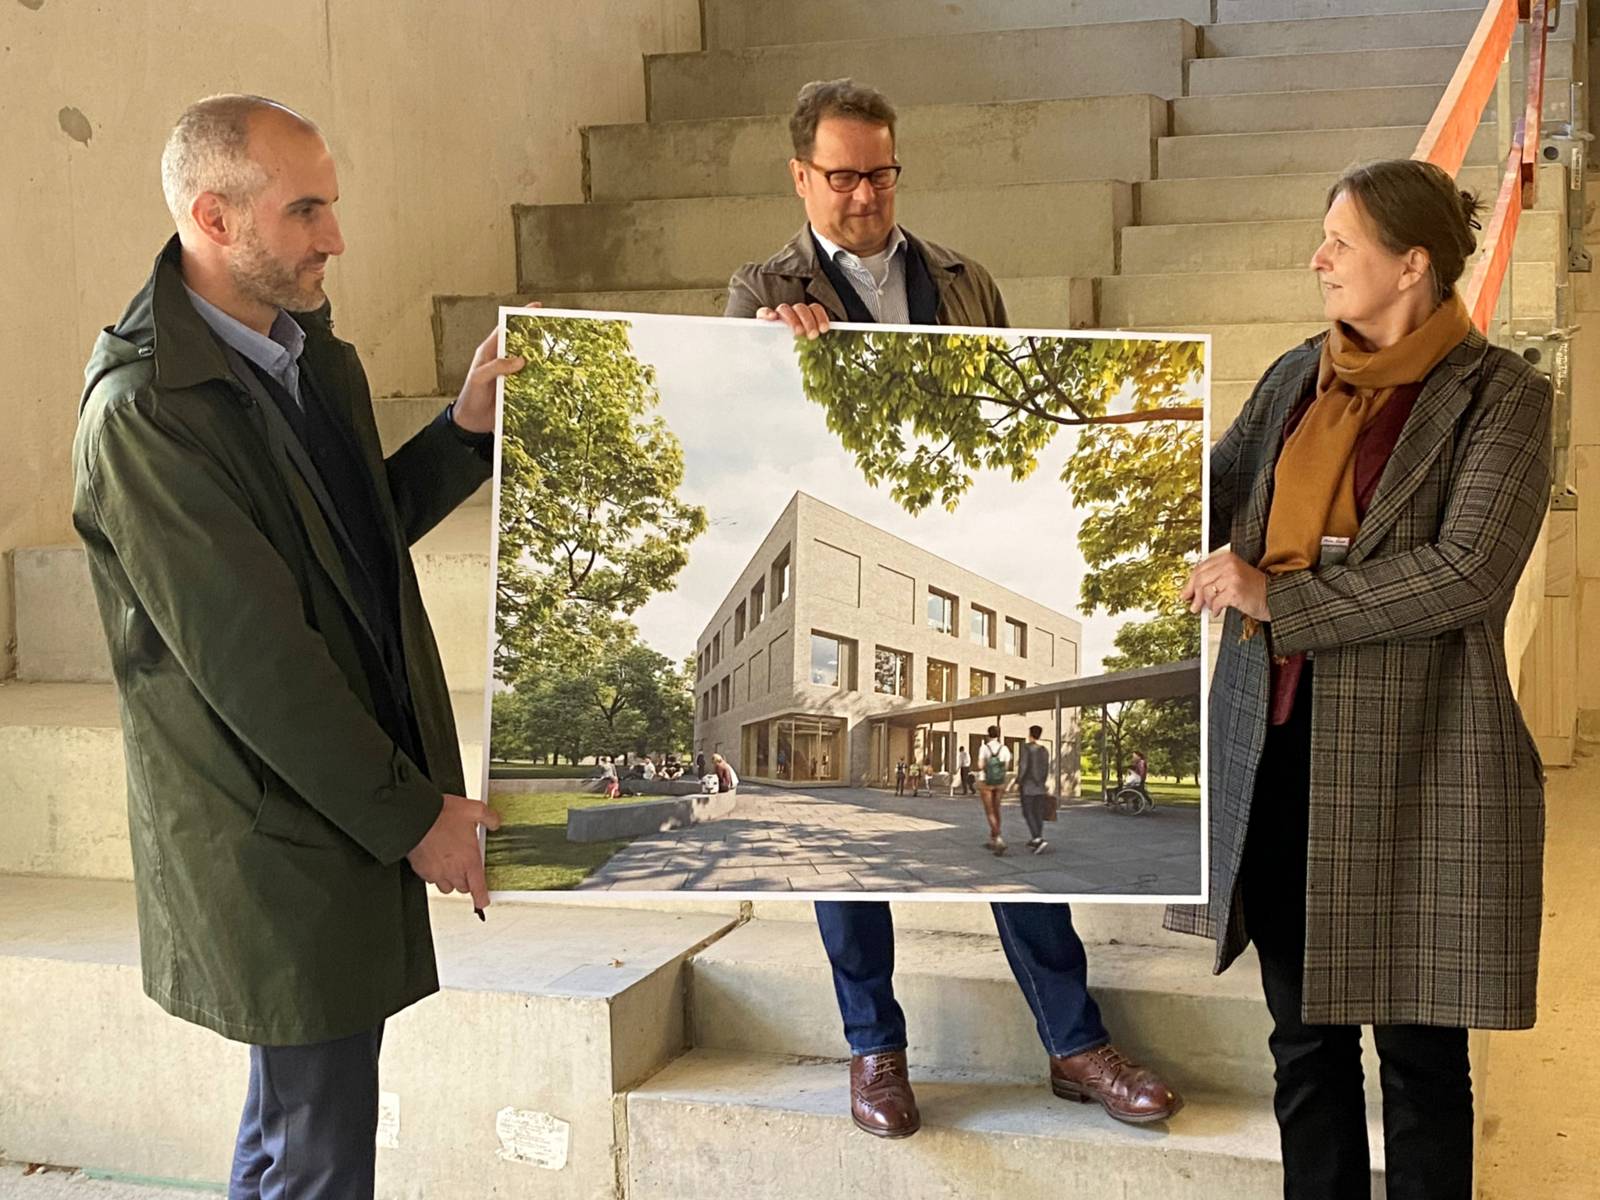 Drei Personen stehen in einem Rohbau und halten ein Bild, auf dem das fertige Gebäude zu sehen ist